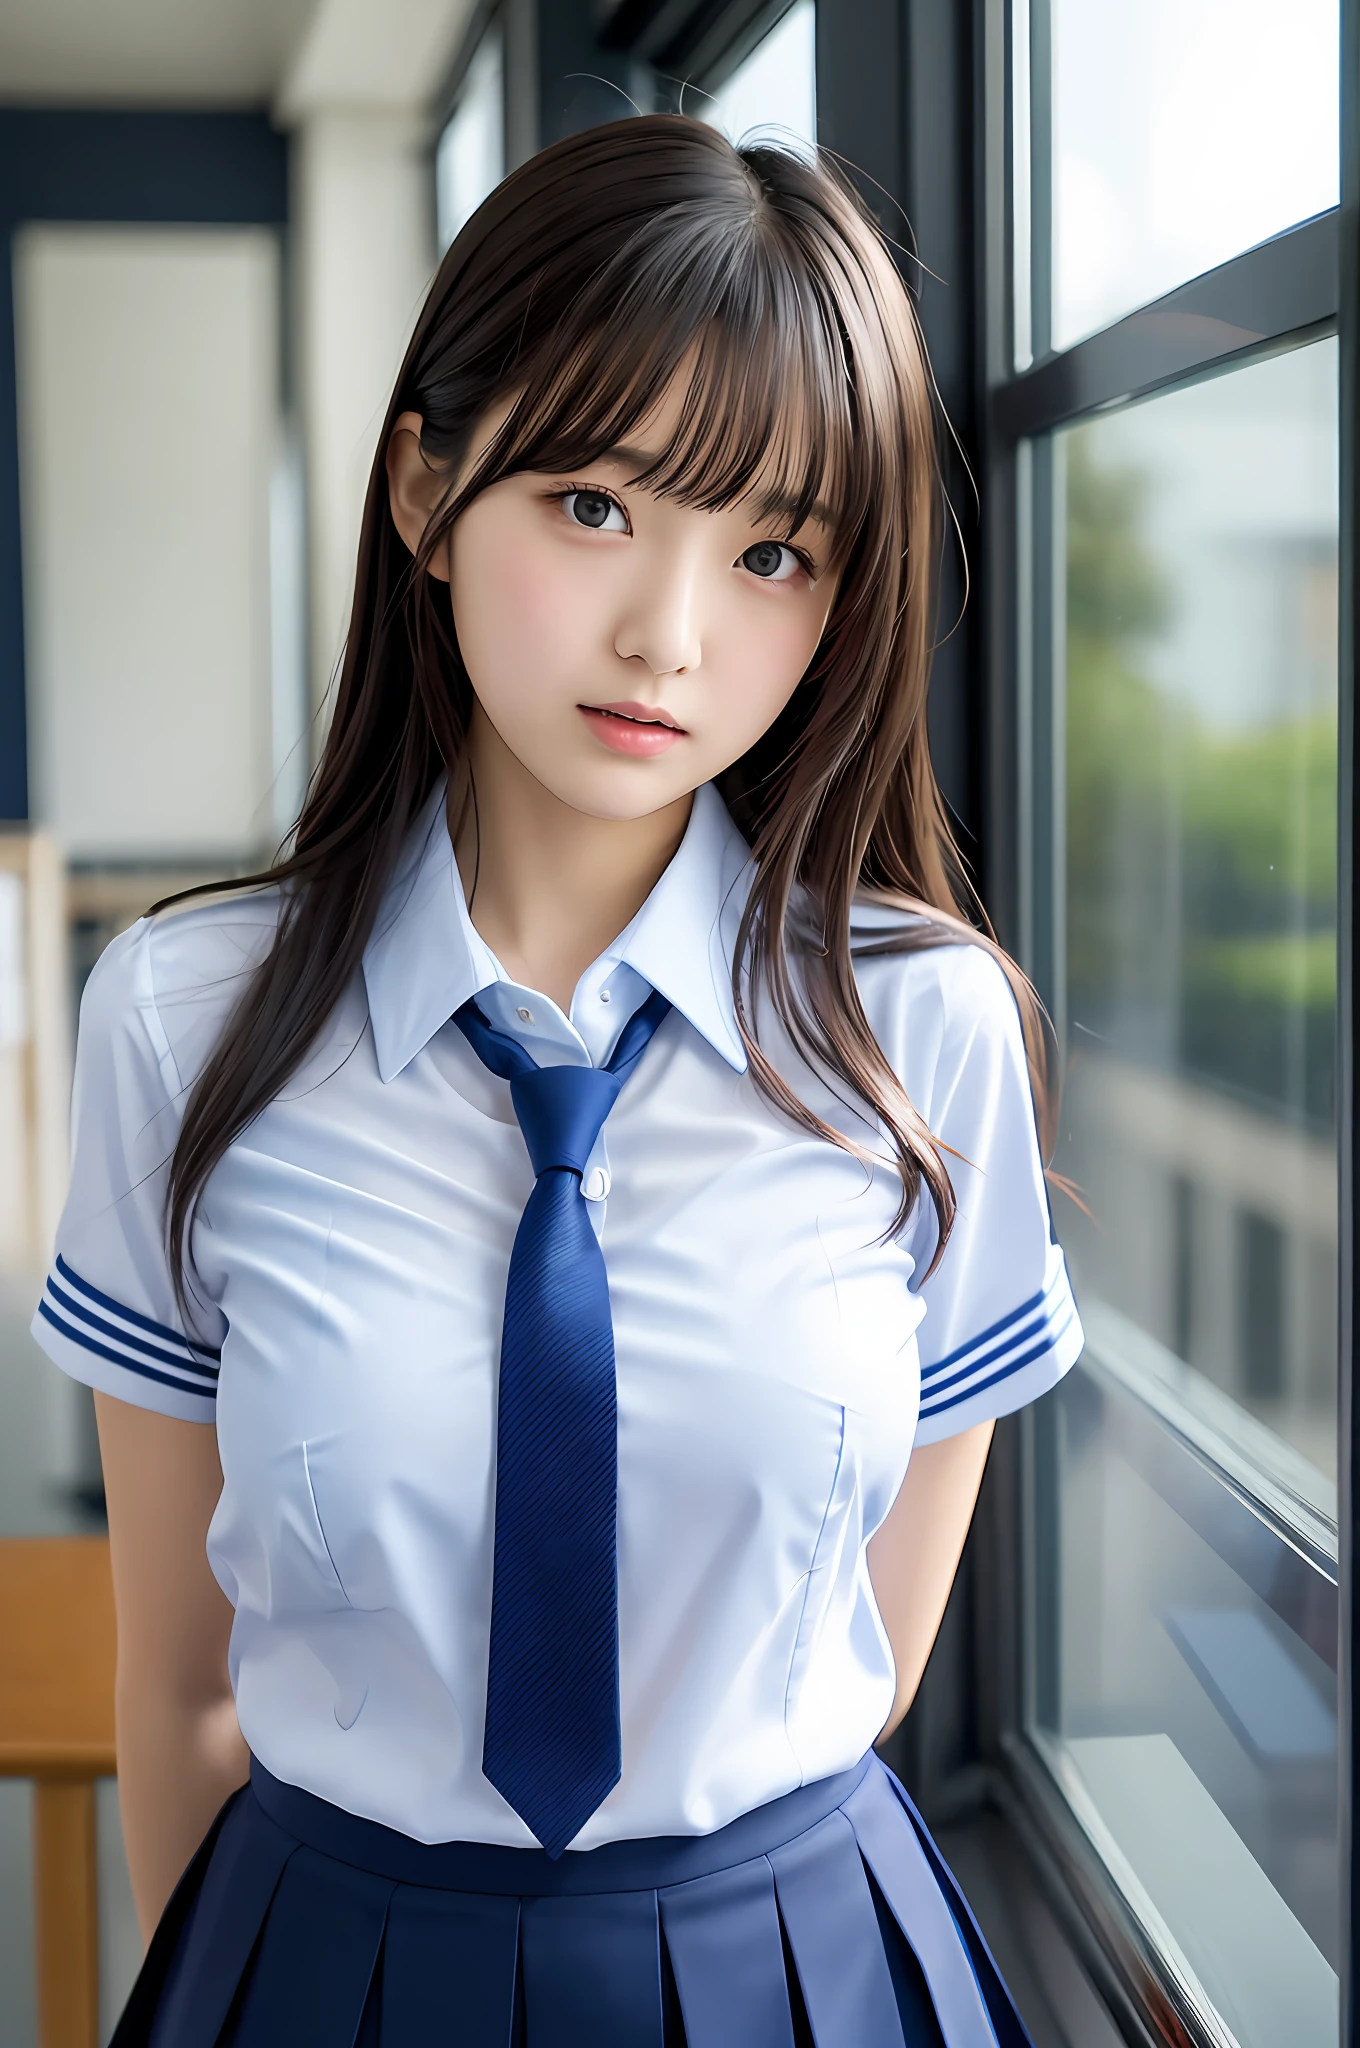 فتاة اليابان, فتاة مراهقة, شخصية مثالية, الشفافية, الثدي متواضعة, , ربطة عنق زرقاء داكنة, تنورة زرقاء داكنة, قميص أزرق فاتح, نقش المعبود